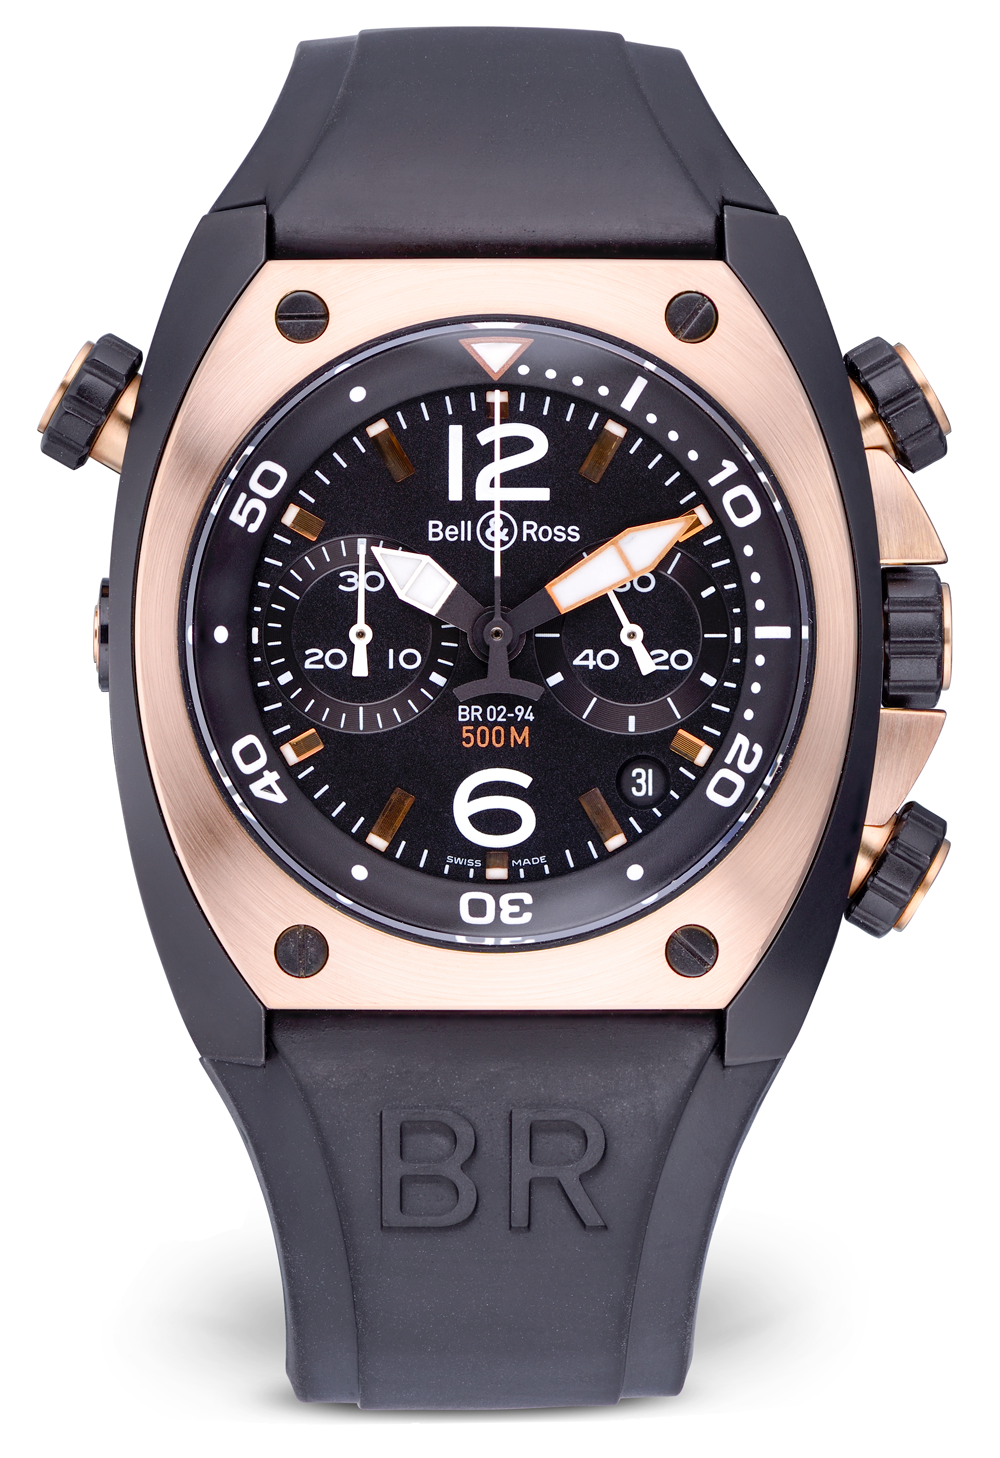 Швейцарские часы Bell & Ross Bicolor Marine Chronograph BR02-94(1129) №3